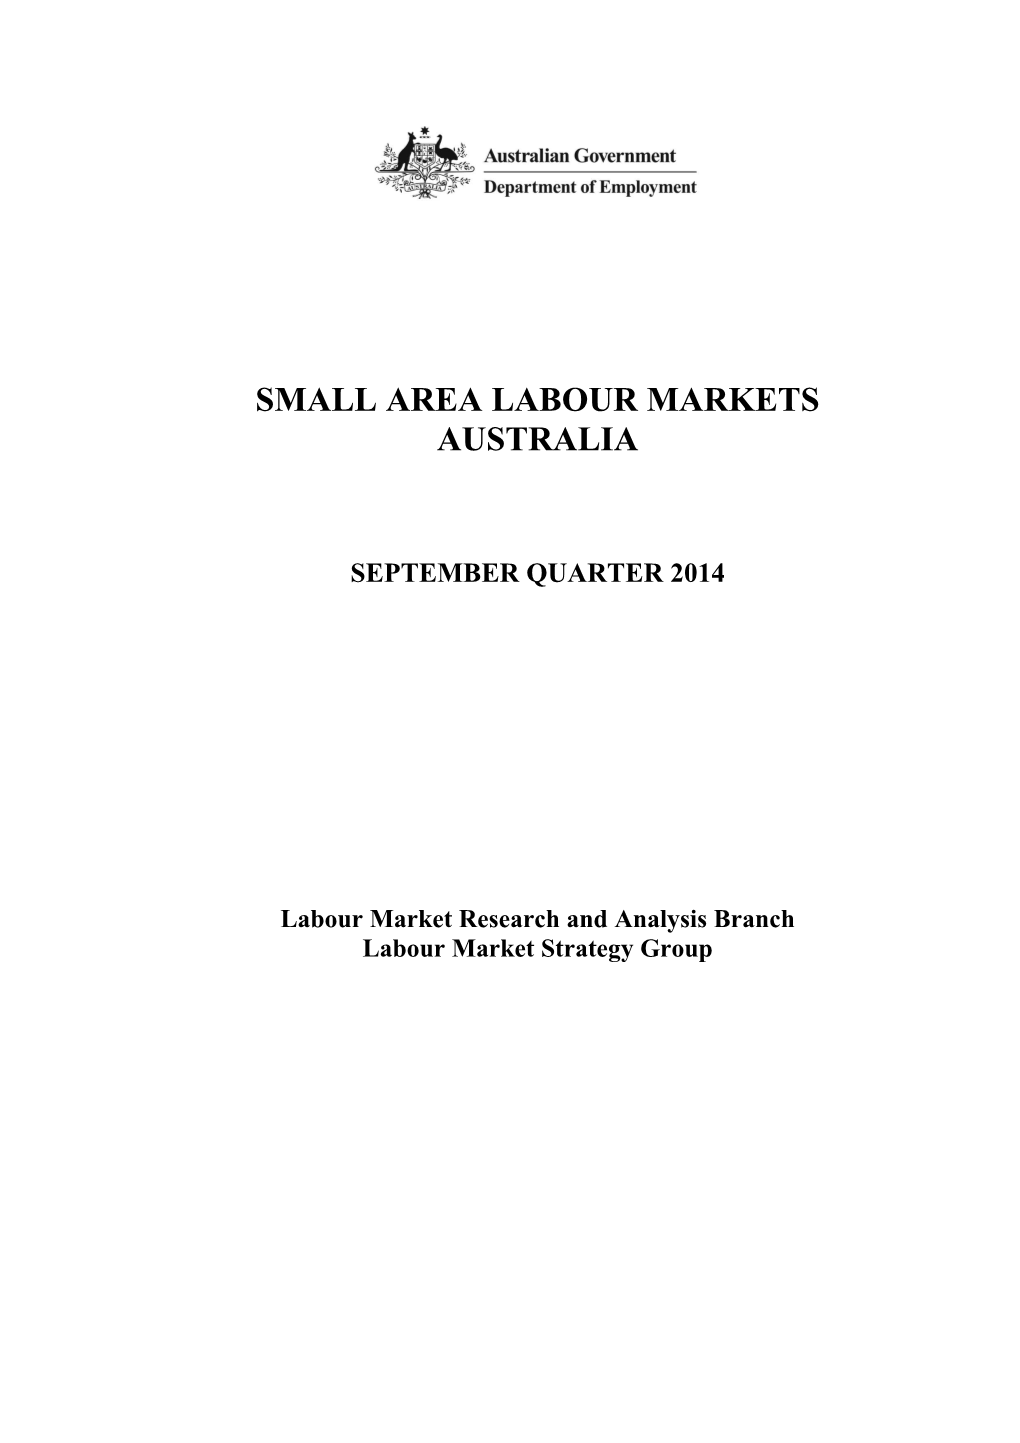 Small Area Labour Markets September Quarter 20141